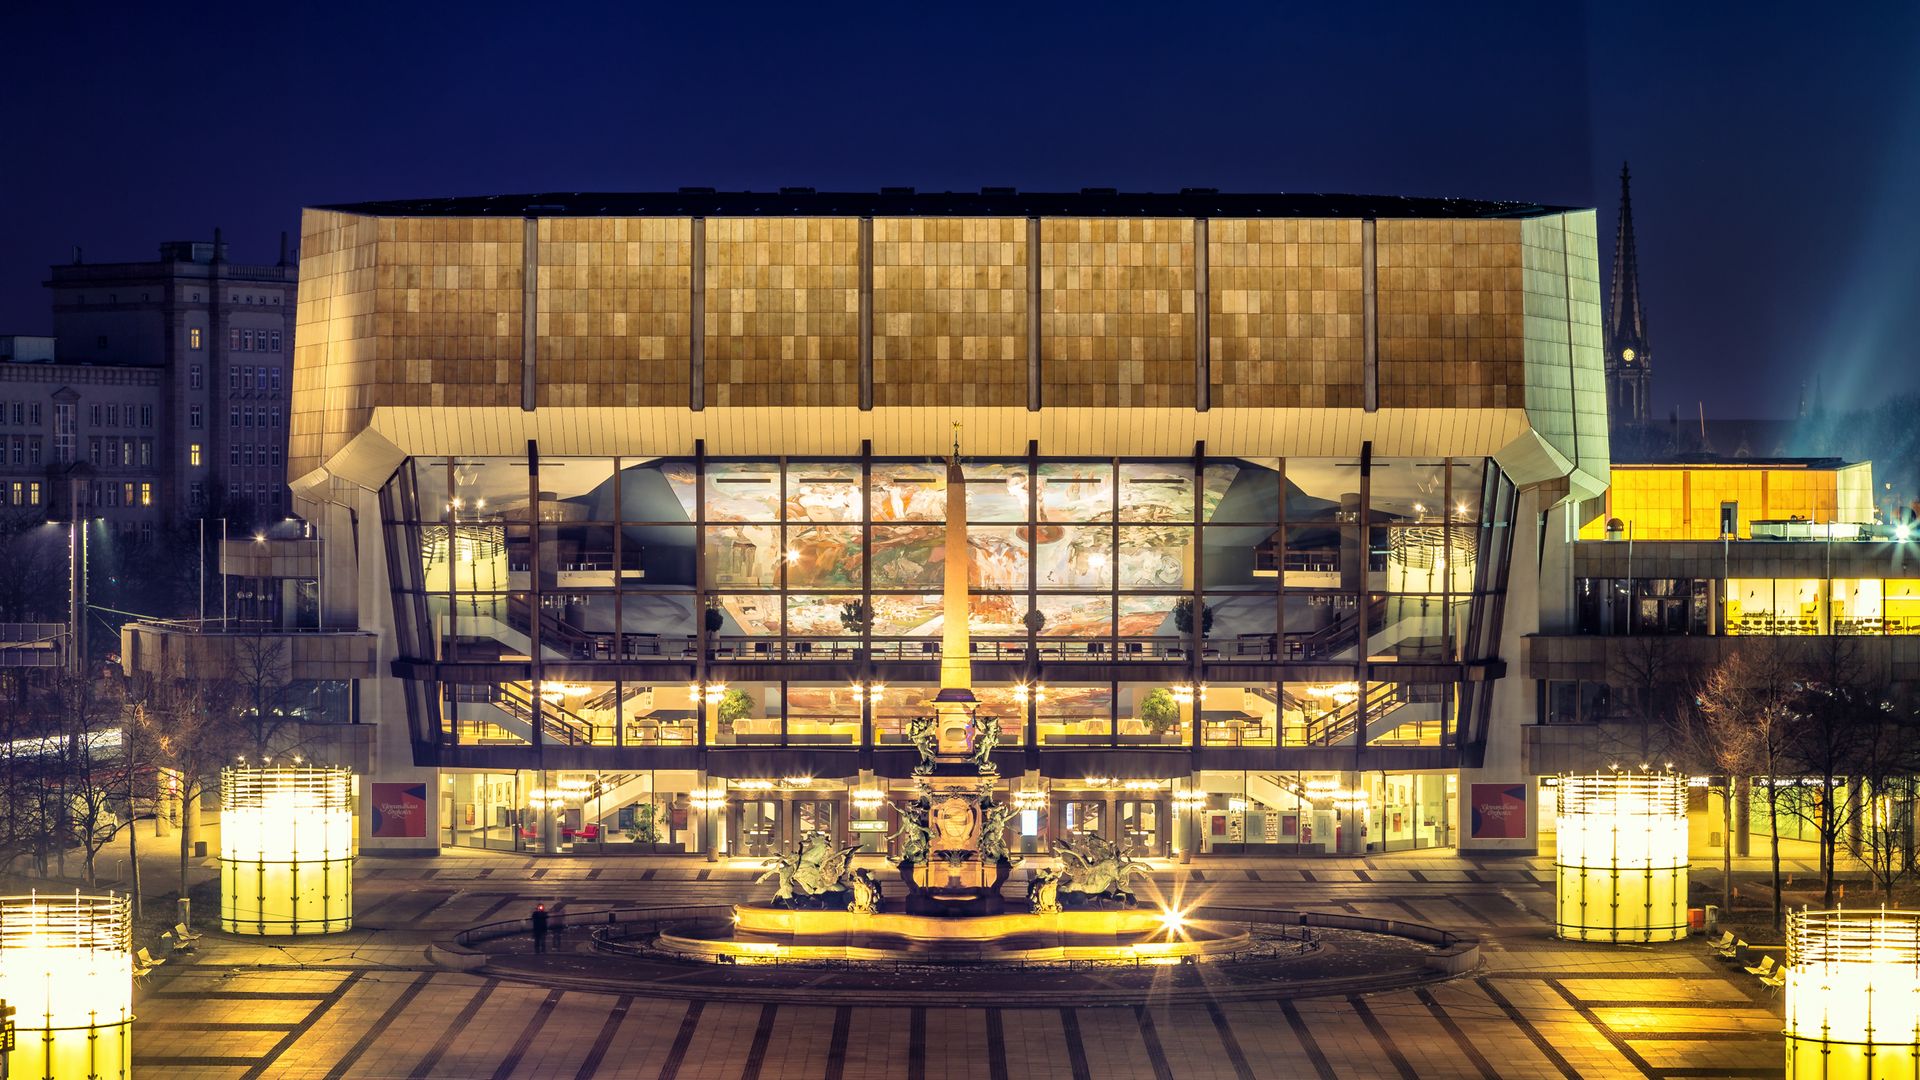 Pohled na osvětlenou kašnu Mendebrunnen a osvětlený lipský Gewandhaus, ve kterém hraje slavný Orchestr Gewandhausu a který je skutečnou pamětihodností města hudby Lipska, na náměstí Augustusplatz ve večerních hodinách, kulturní zařízení